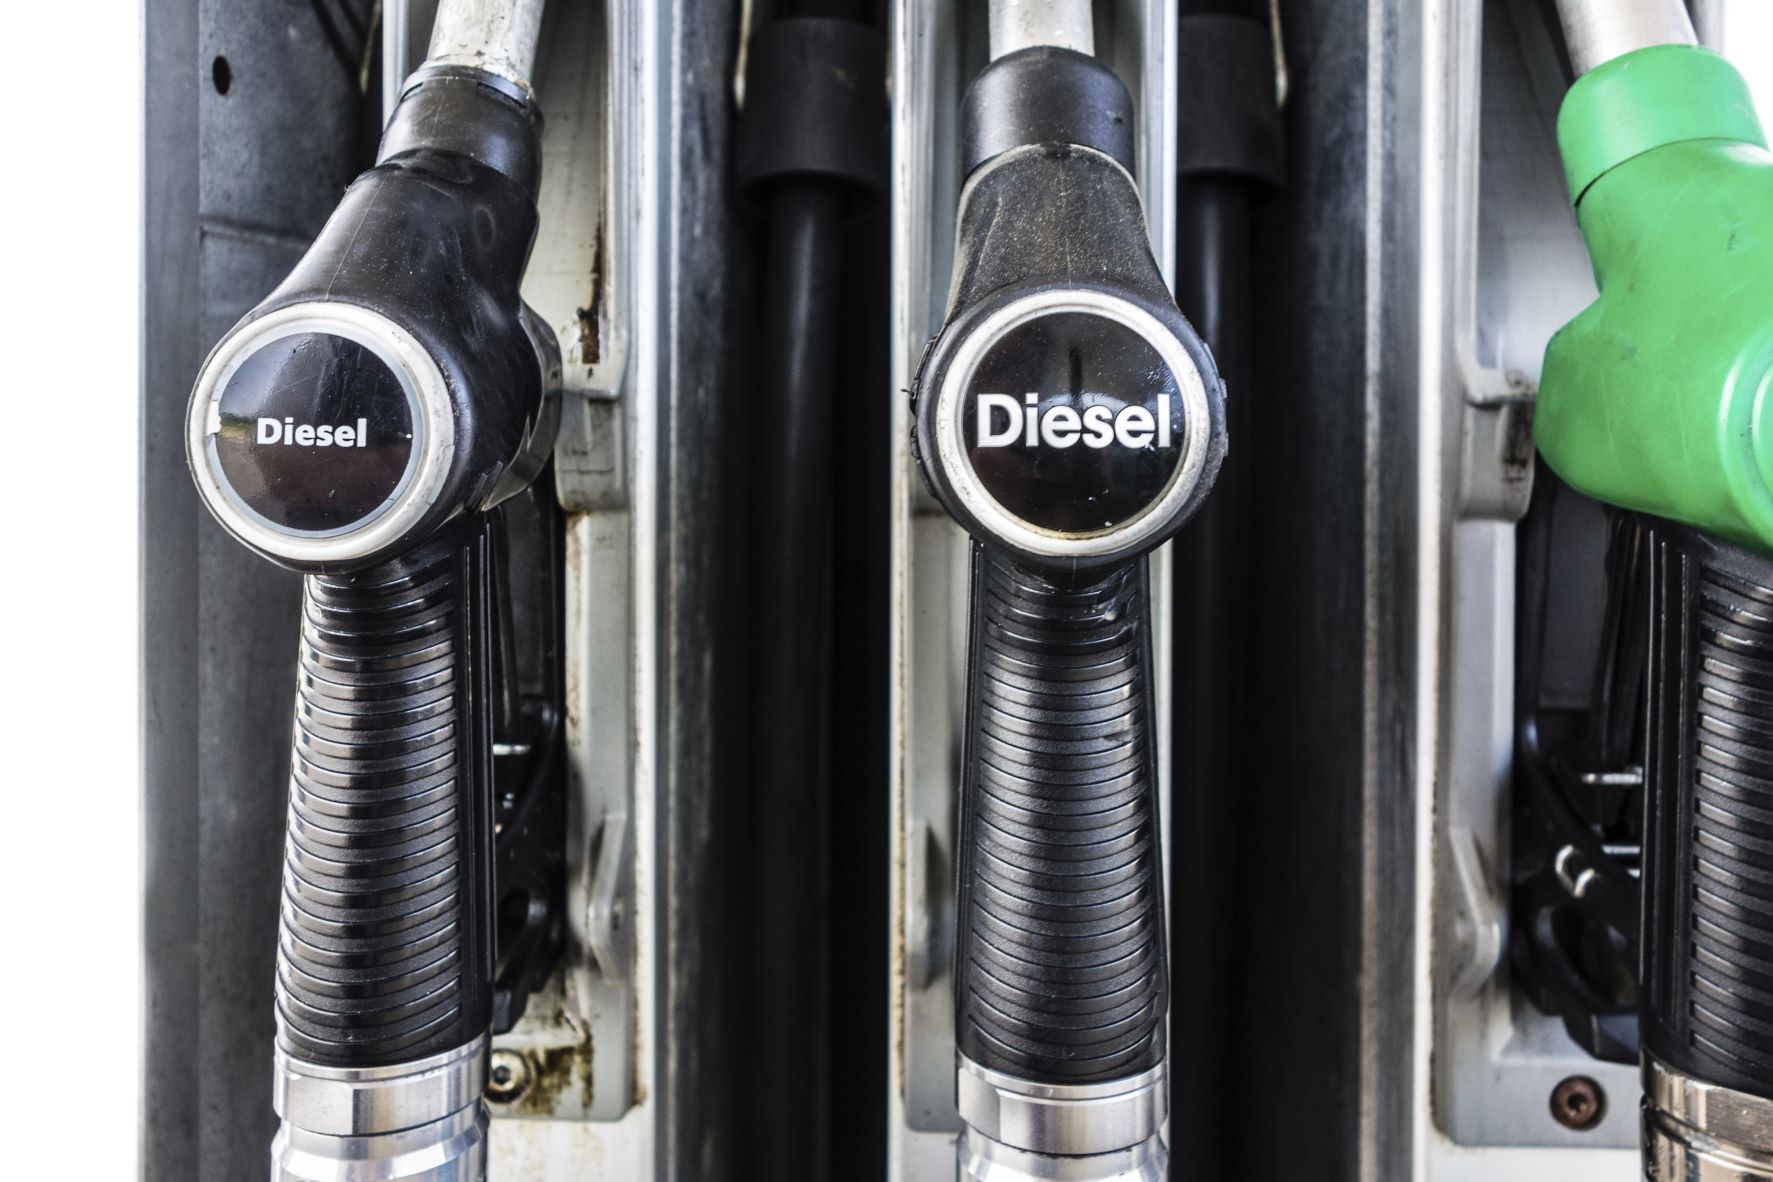 diesel pumps